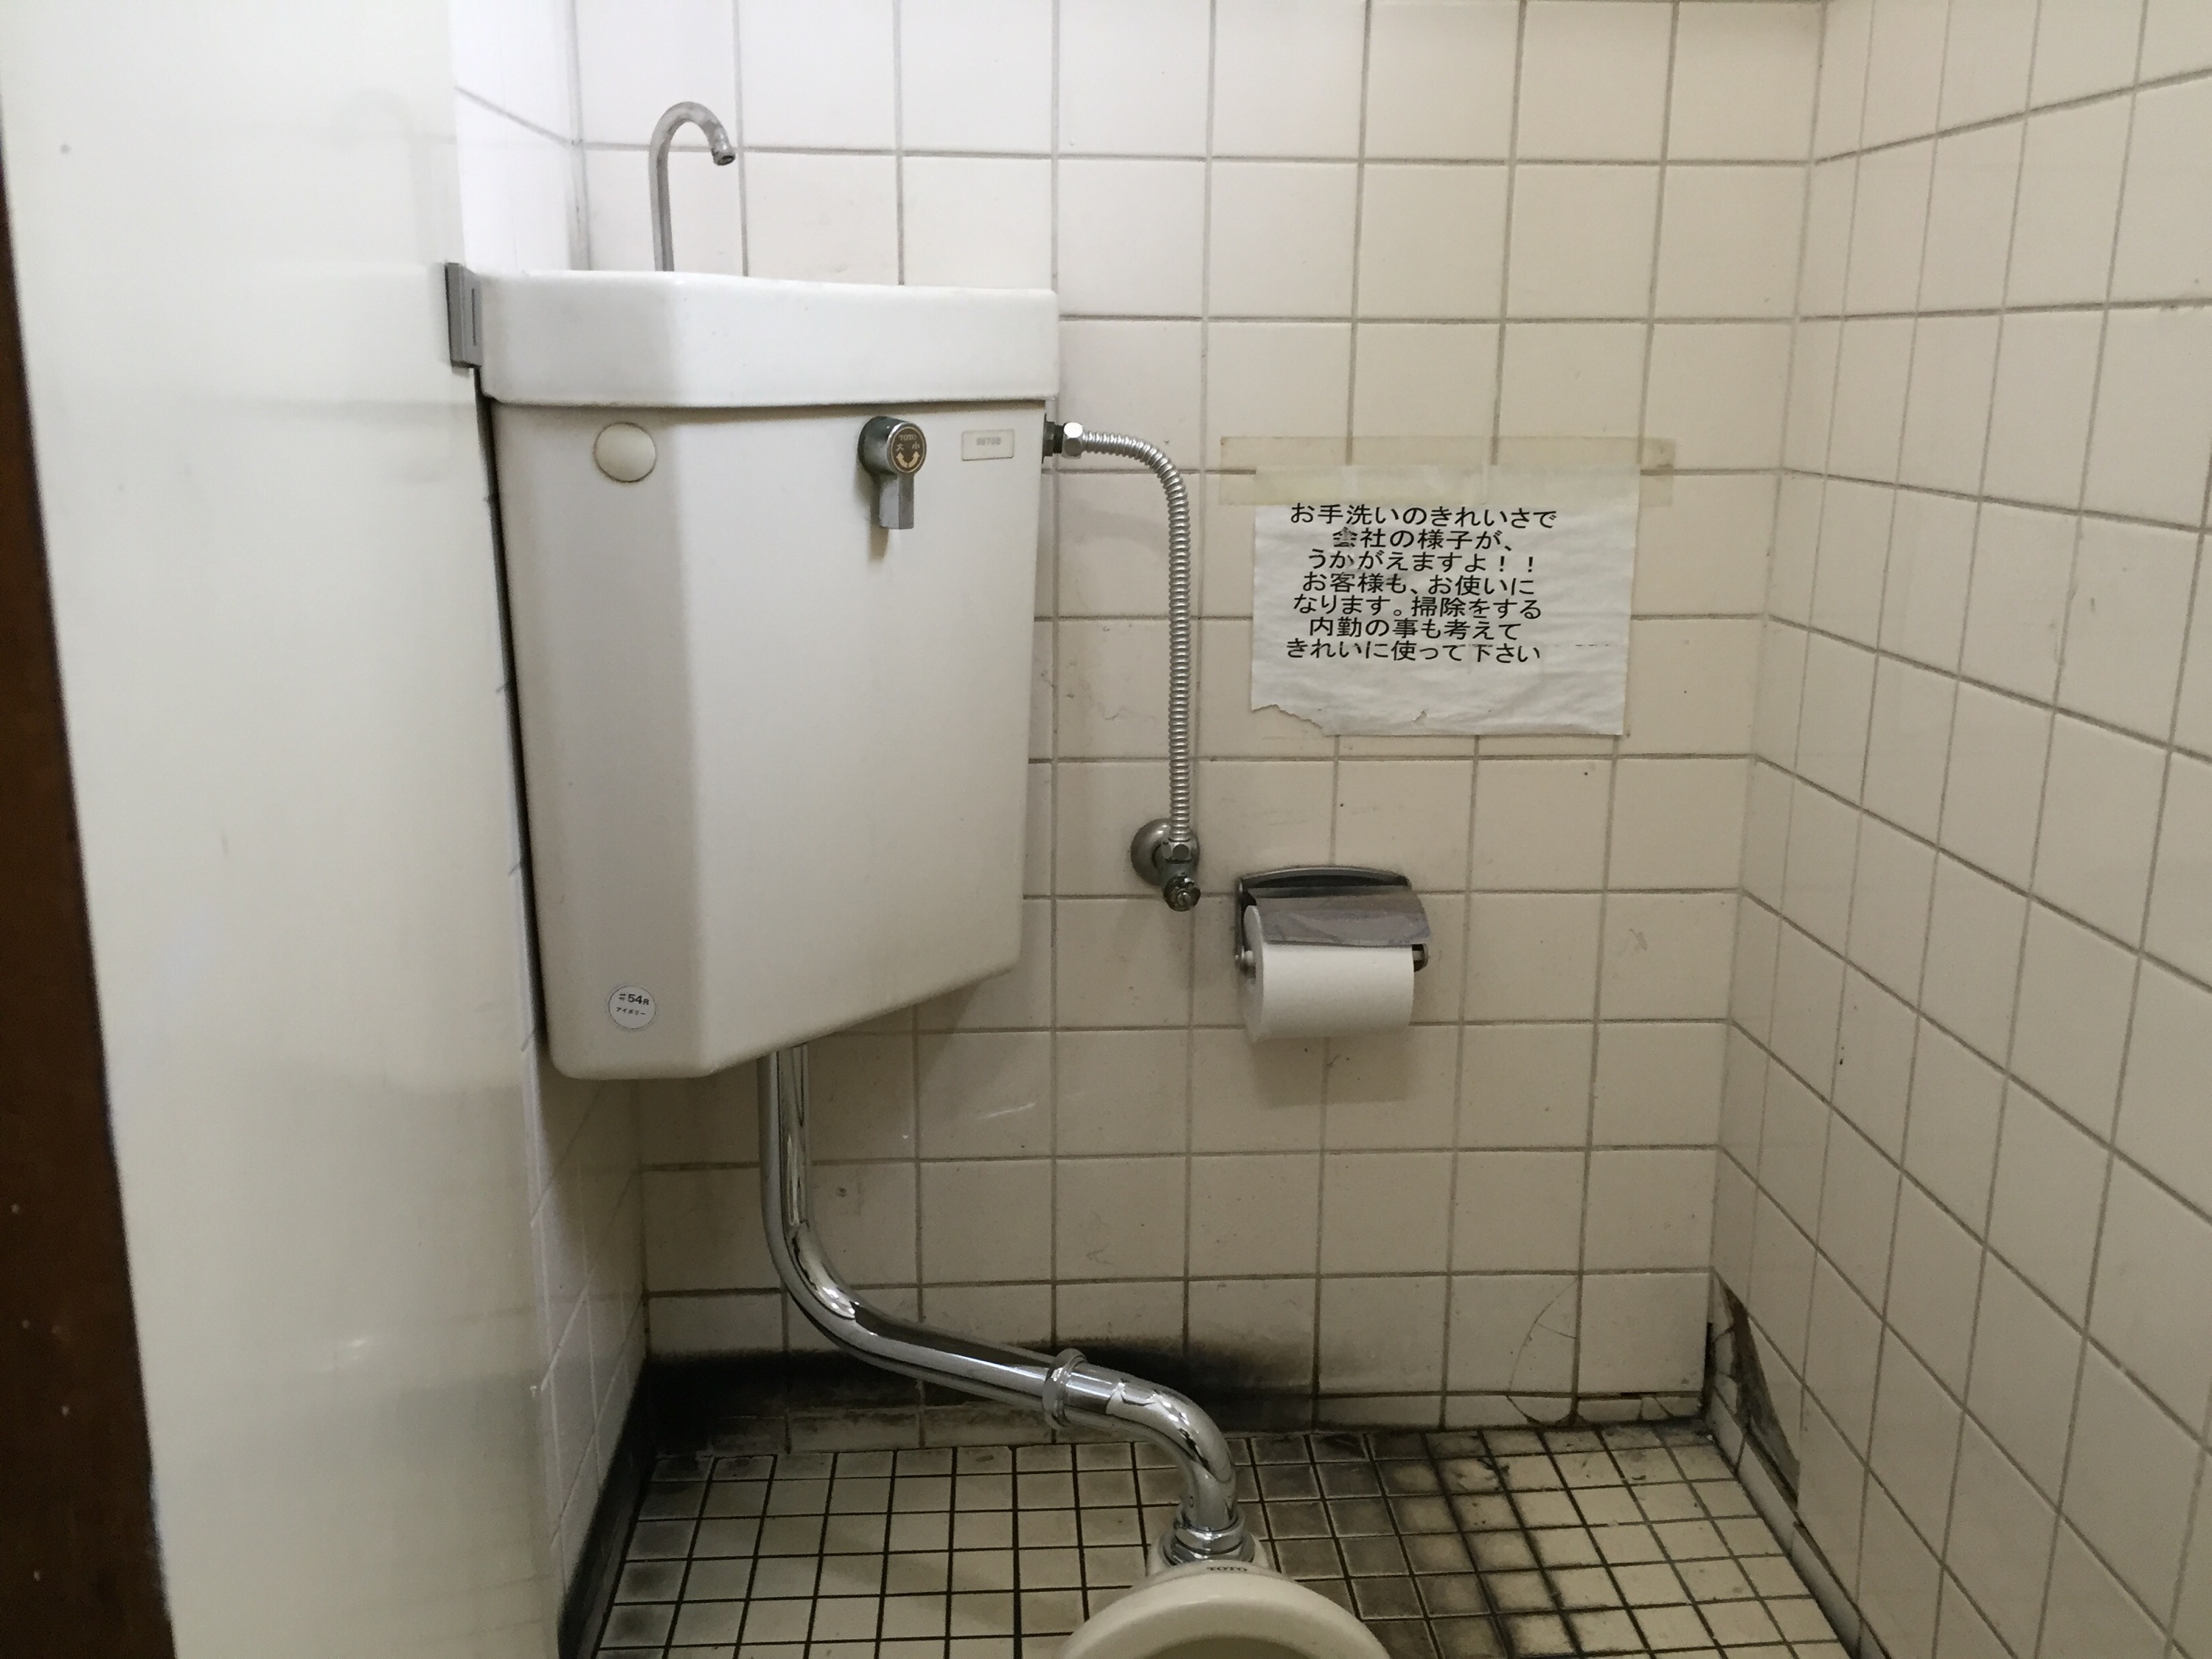 水のトラブルなら㈱タバタコーポレーション｜タバタ水道【水道工事 水道修理 埼玉県さいたま市 トイレ つまり 便器交換